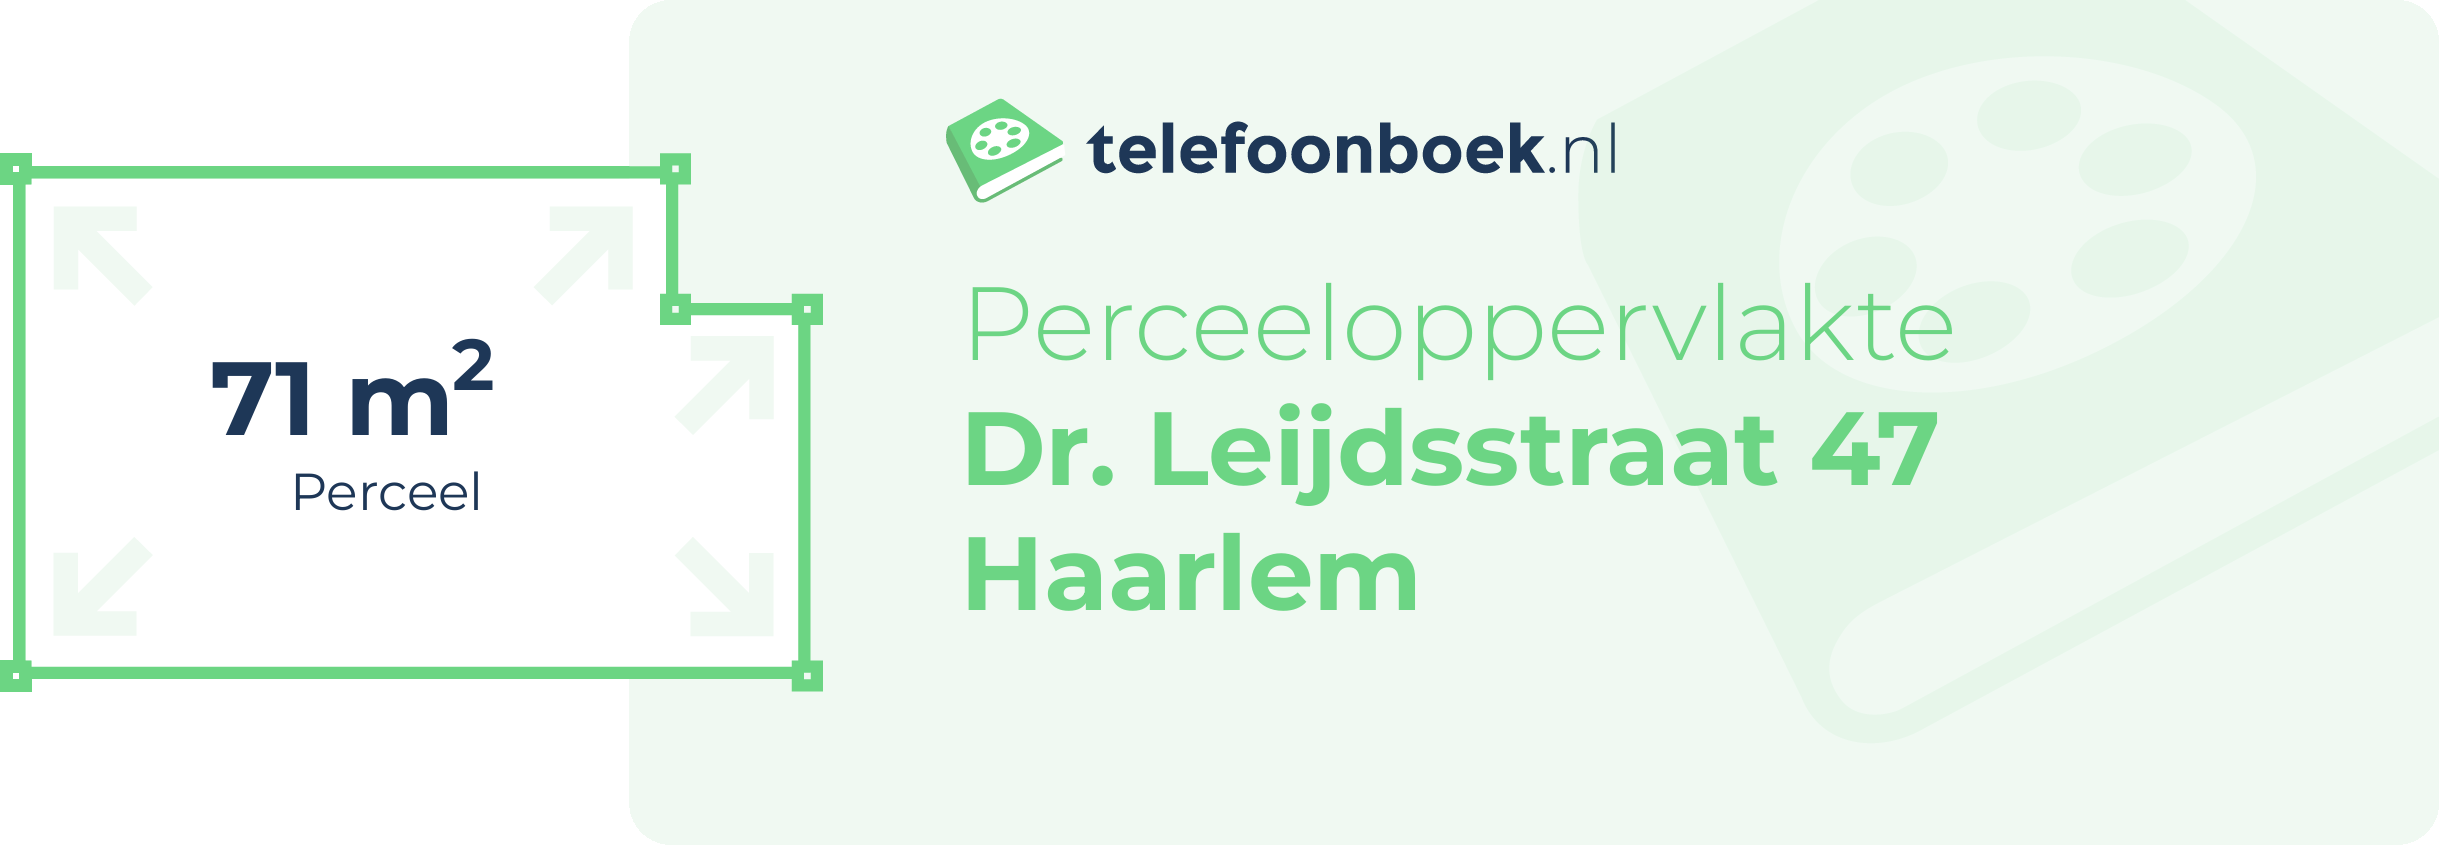 Perceeloppervlakte Dr. Leijdsstraat 47 Haarlem